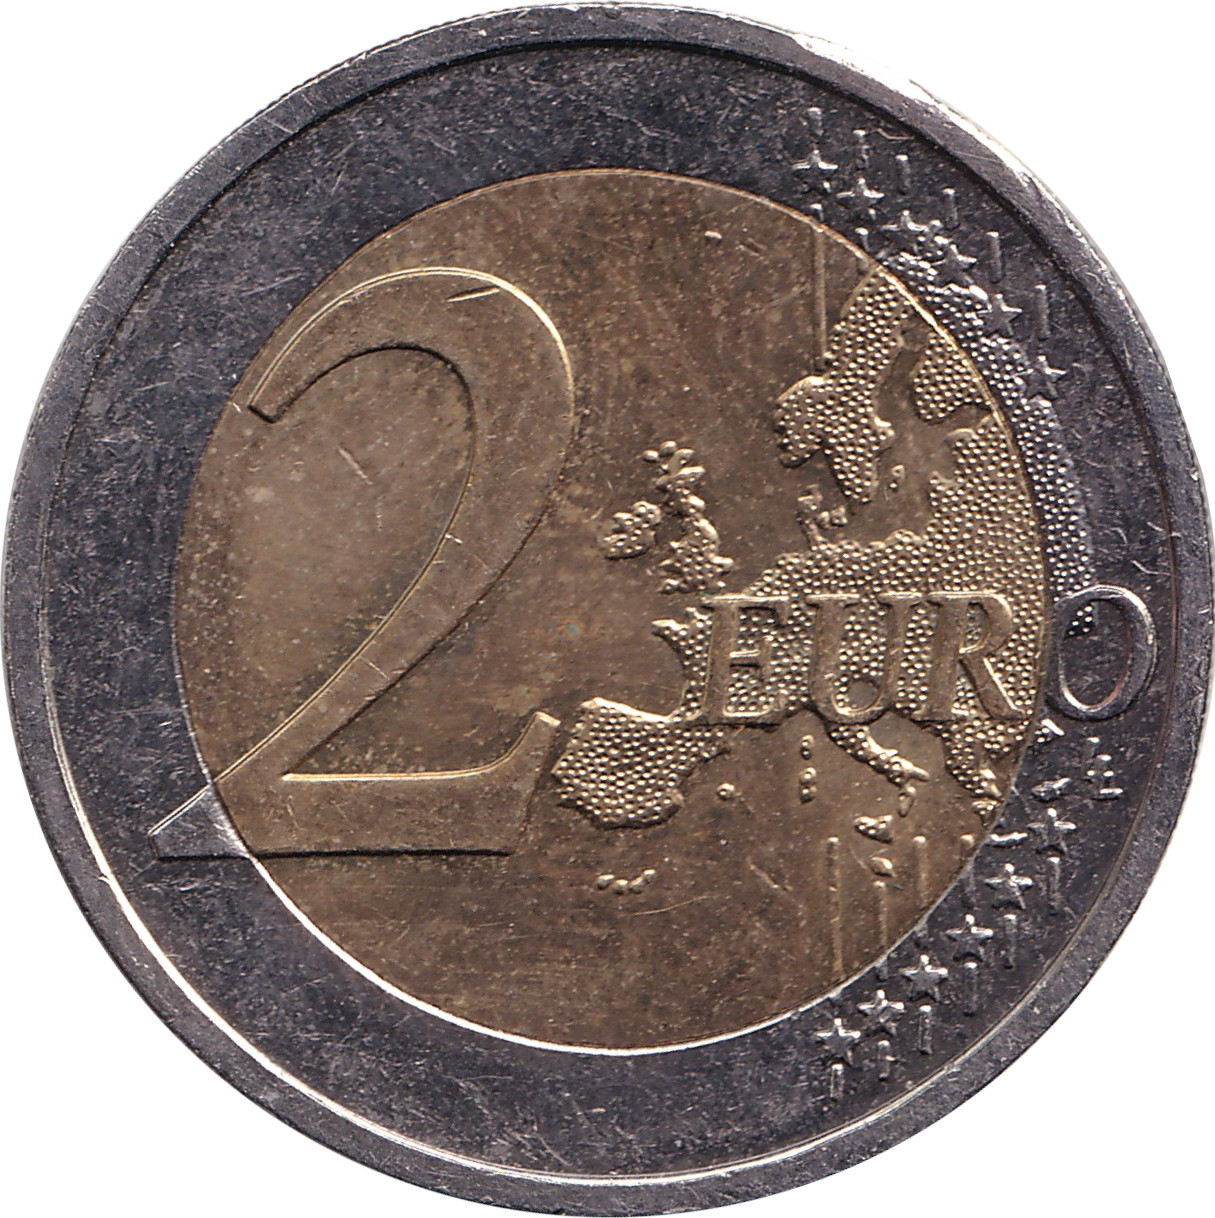 2 euro - Union Économique Monétaire - Allemagne